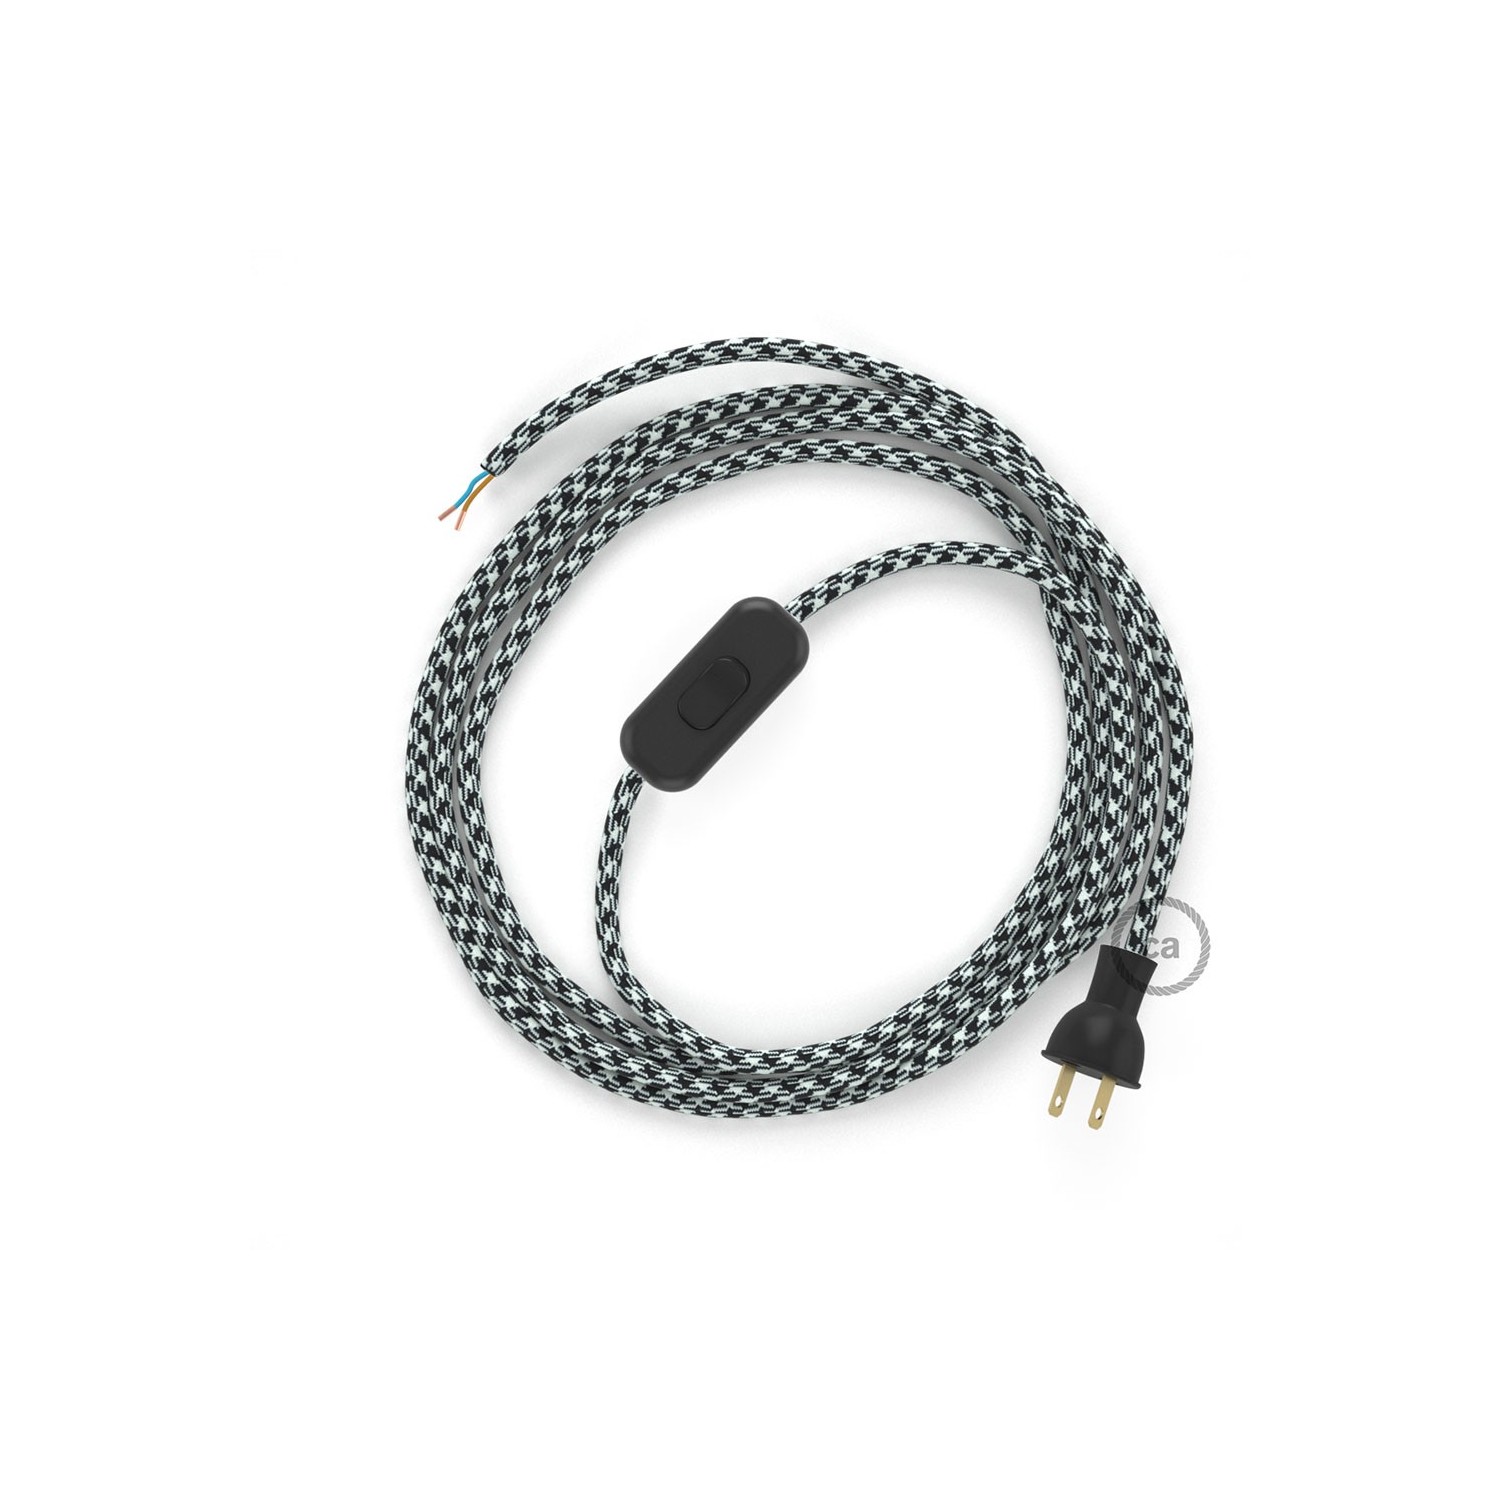 Cableado para lámpara de mesa, cable RP04 Rayón Bicolor Blanco-Negro 1,8 m. Elige el color de la clavija y del interruptor!